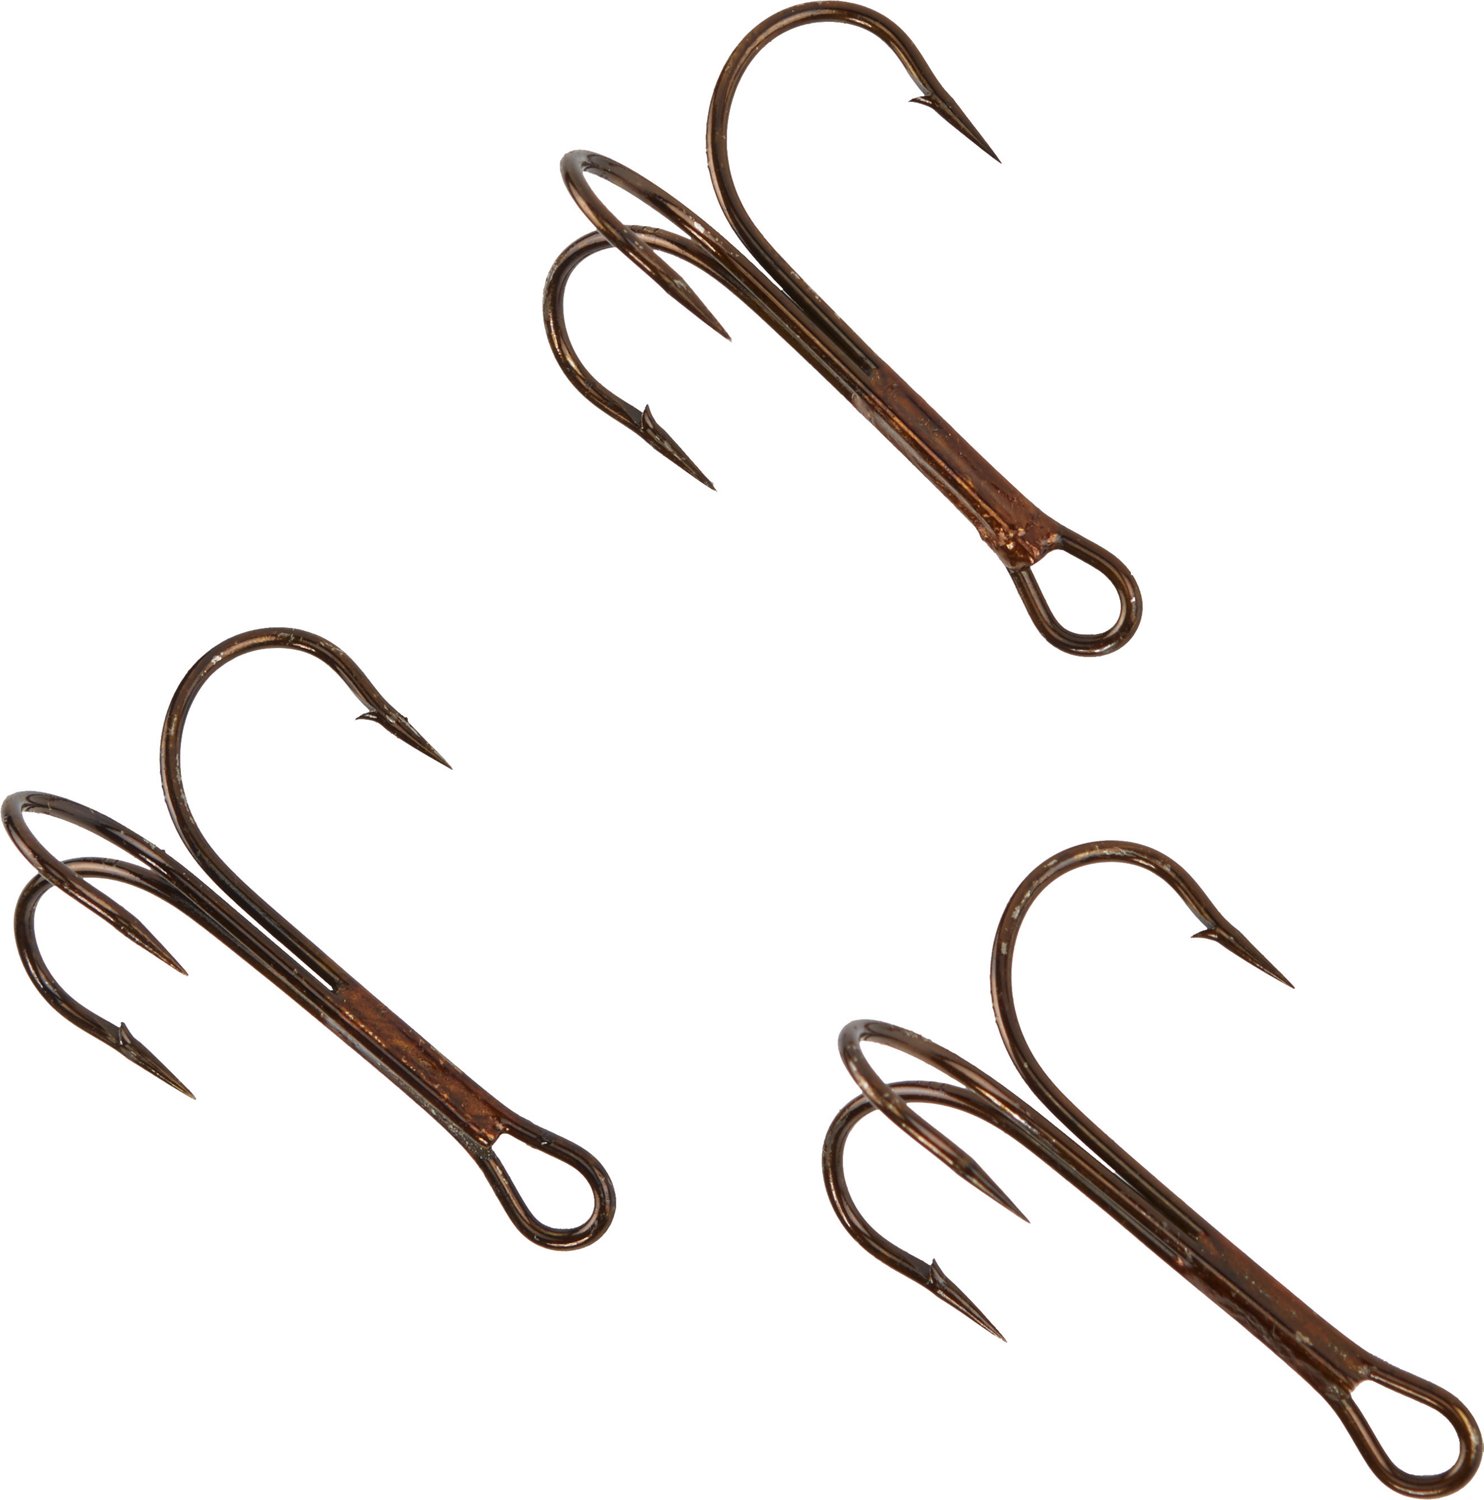 Sharp N Strong Snagging Treble Hooks 12-Pack